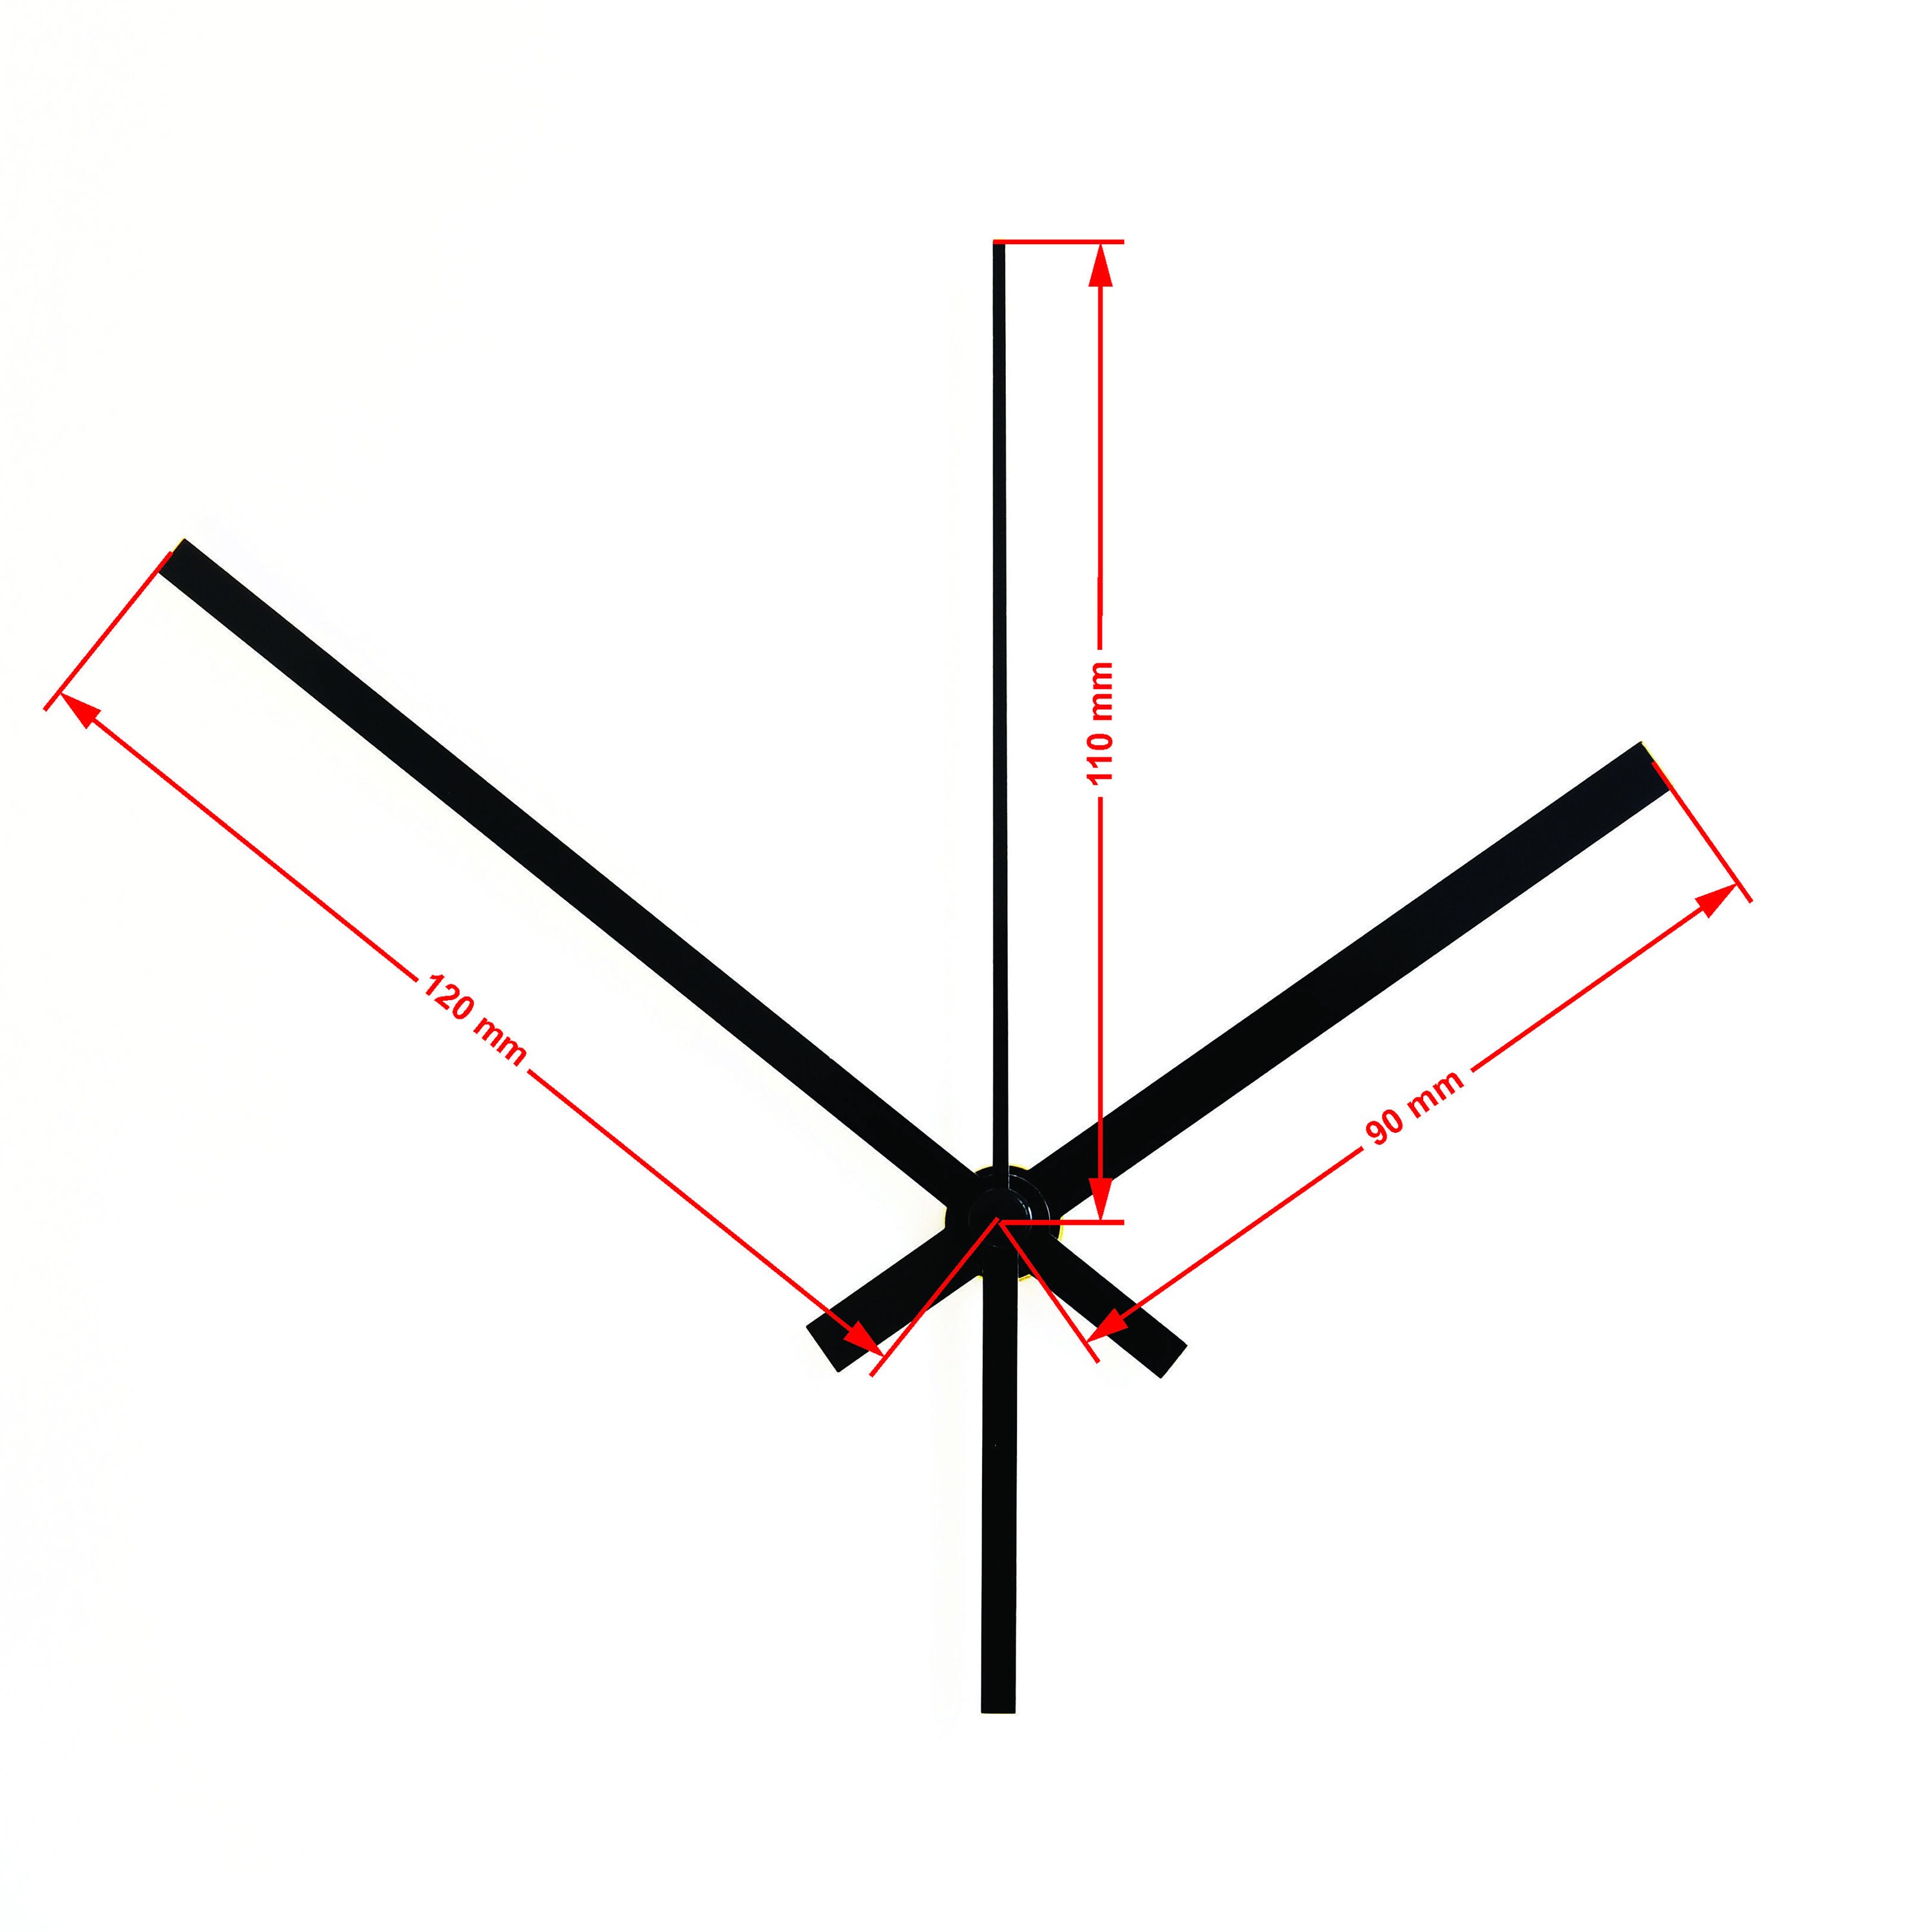  Mecanismo de movimiento de reloj de pared Pieza de reparación  de bricolaje de eje largo Movimiento de reloj de cuarzo Kit de reparación  de reloj de instalación fácil Pieza de reparación